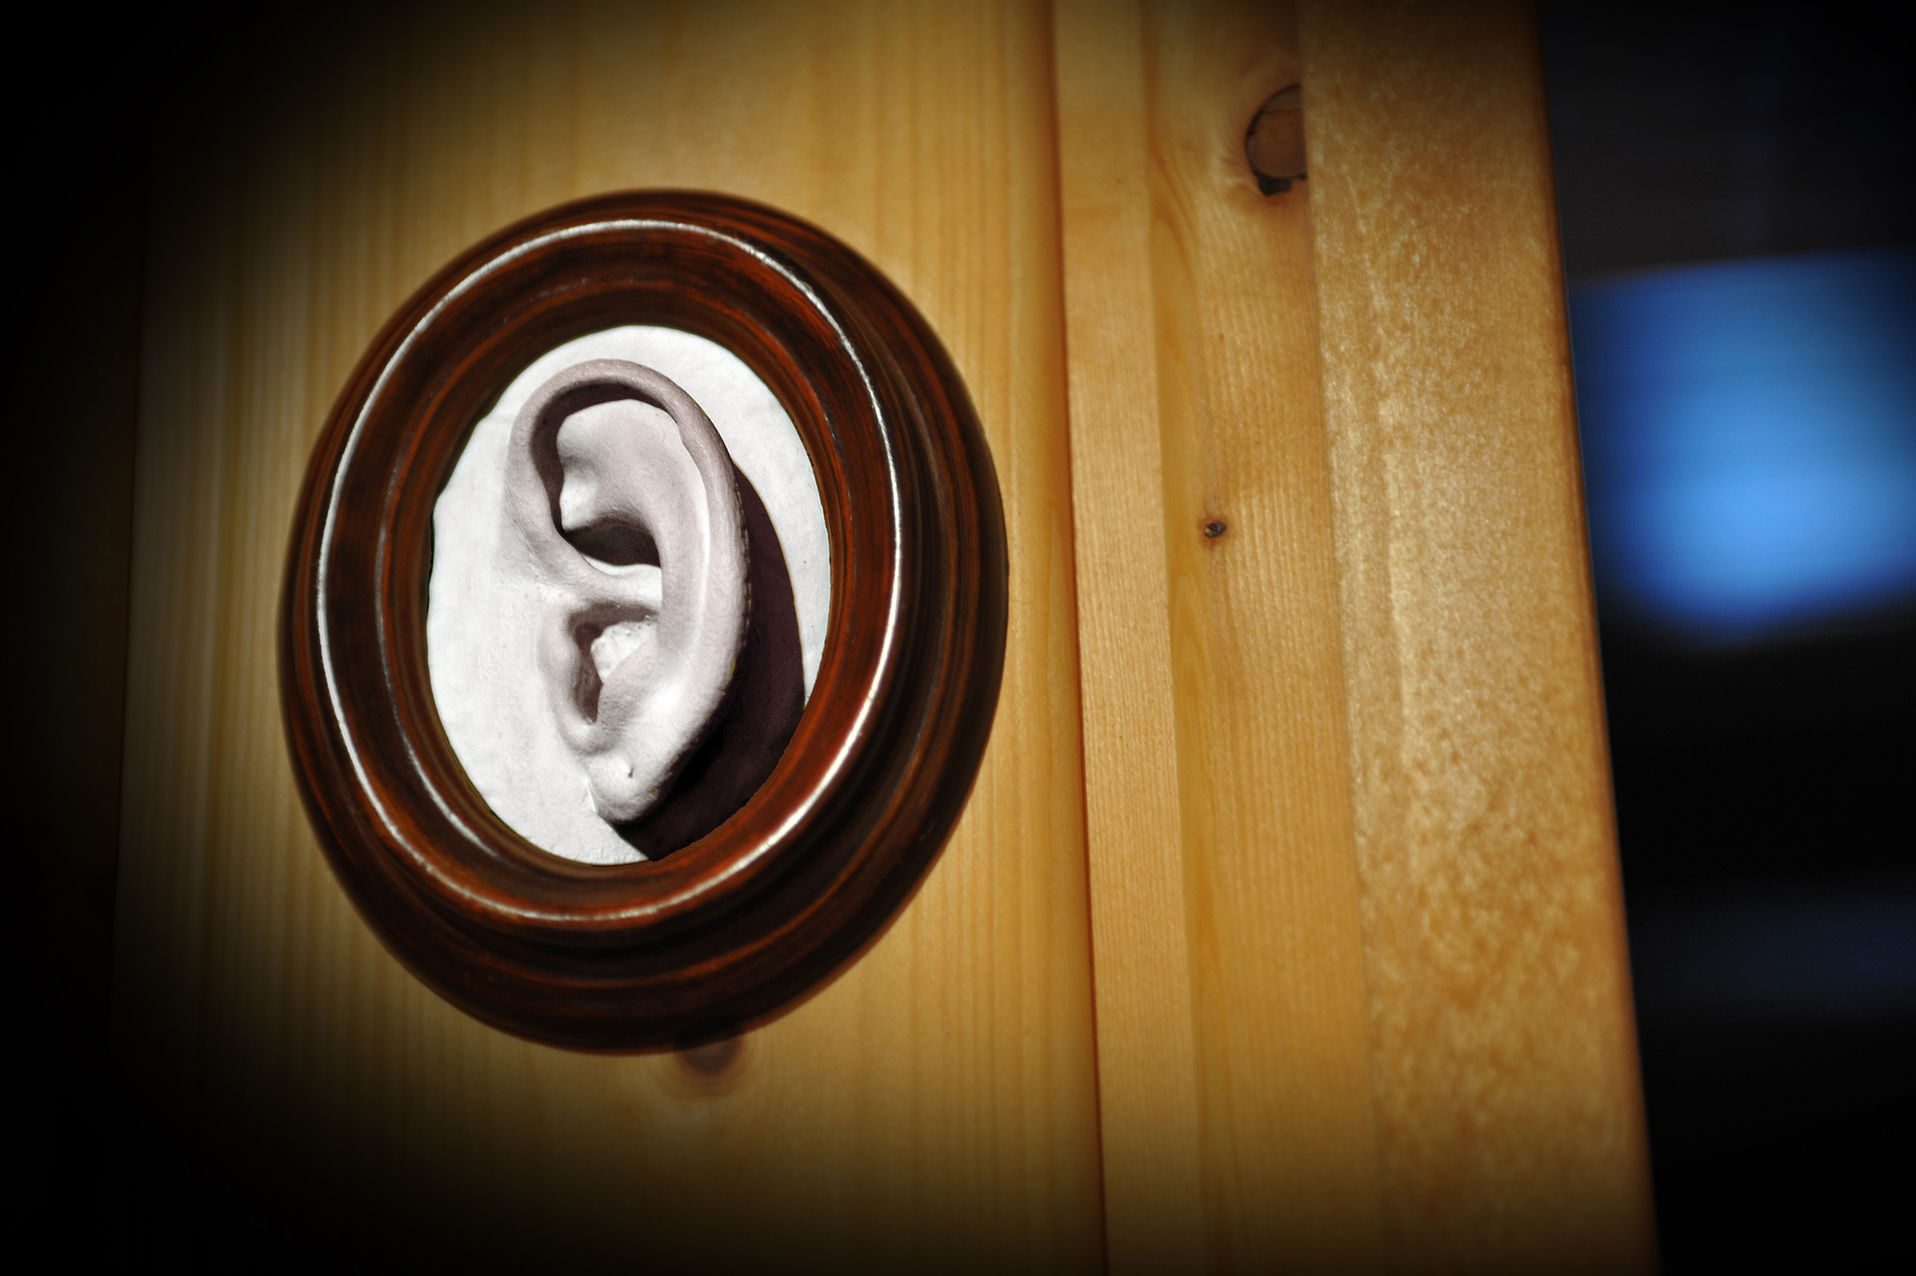 Eingerahmte Plastik eines Ohres hängt an einer Wand.